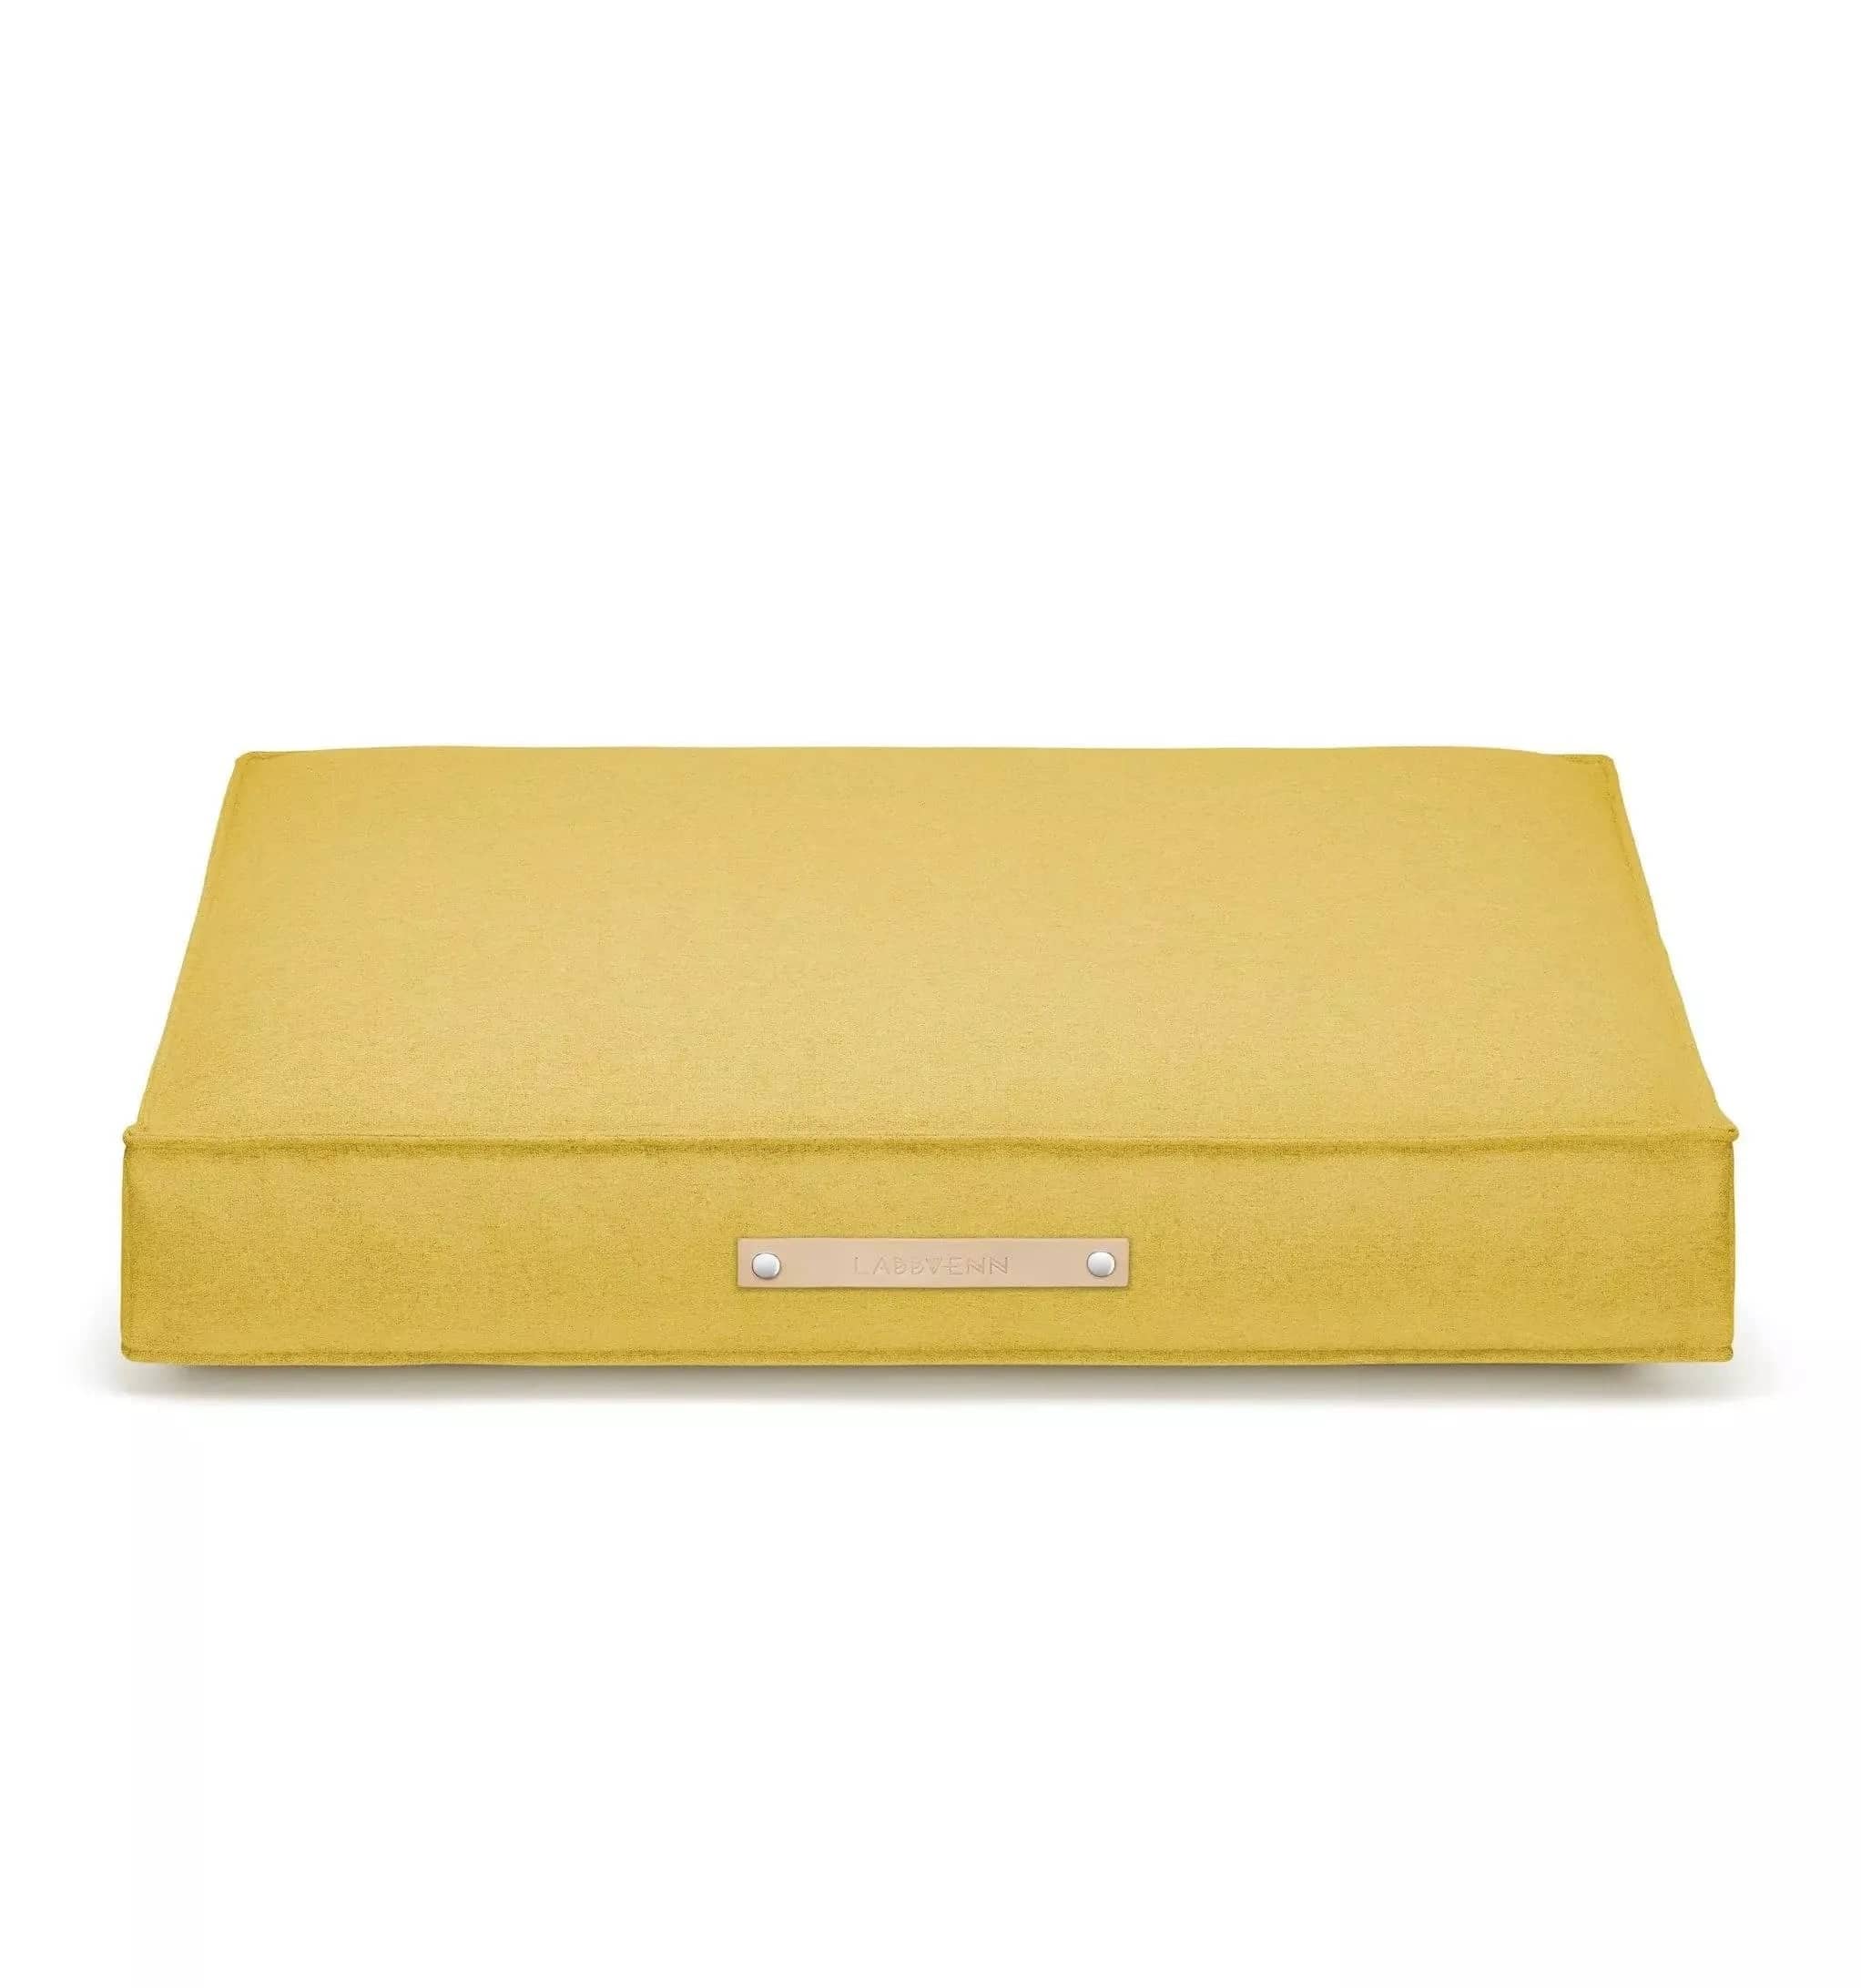 Yellow dog cushion